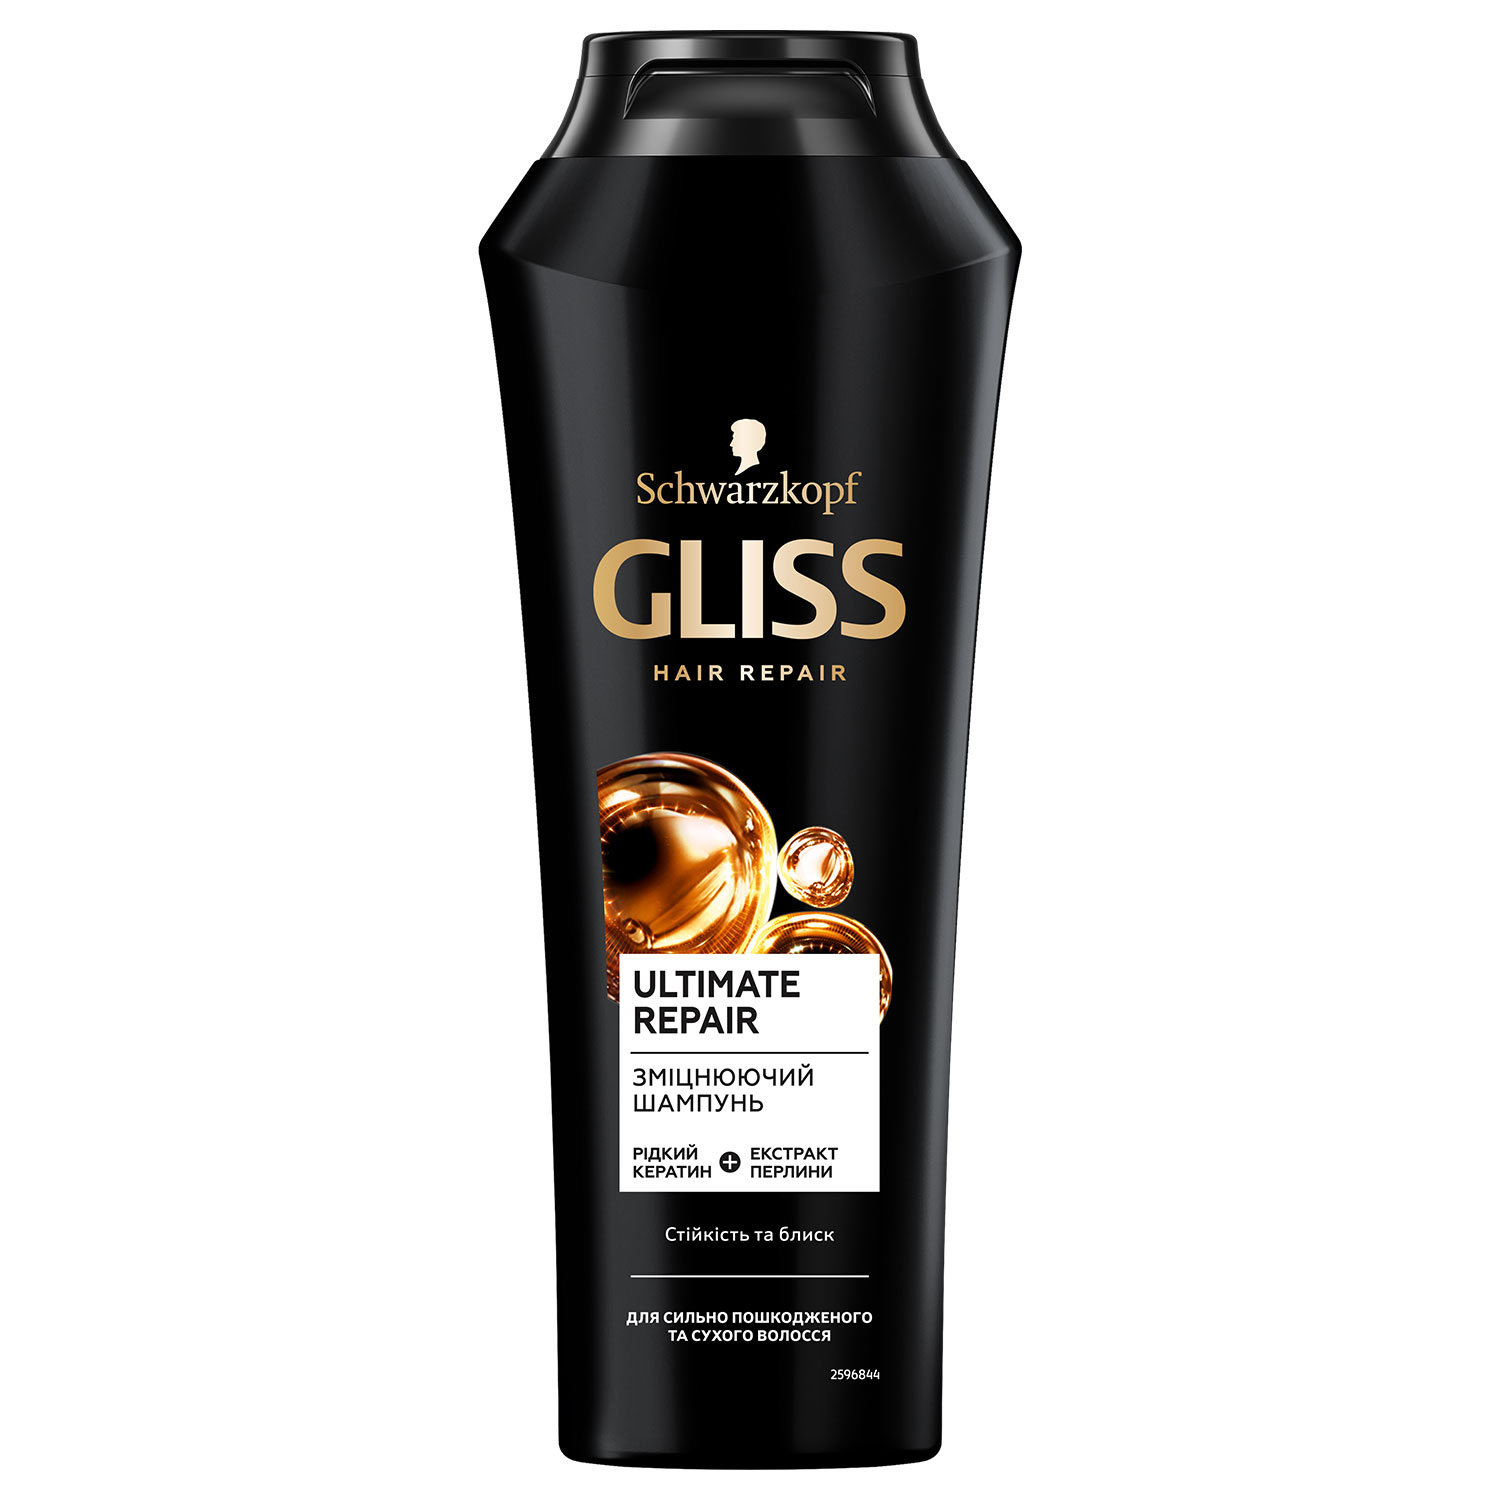 Зміцнюючий шампунь GLISS Ultimate Repair для сильно пошкодженого та сухого волосся, 250 мл